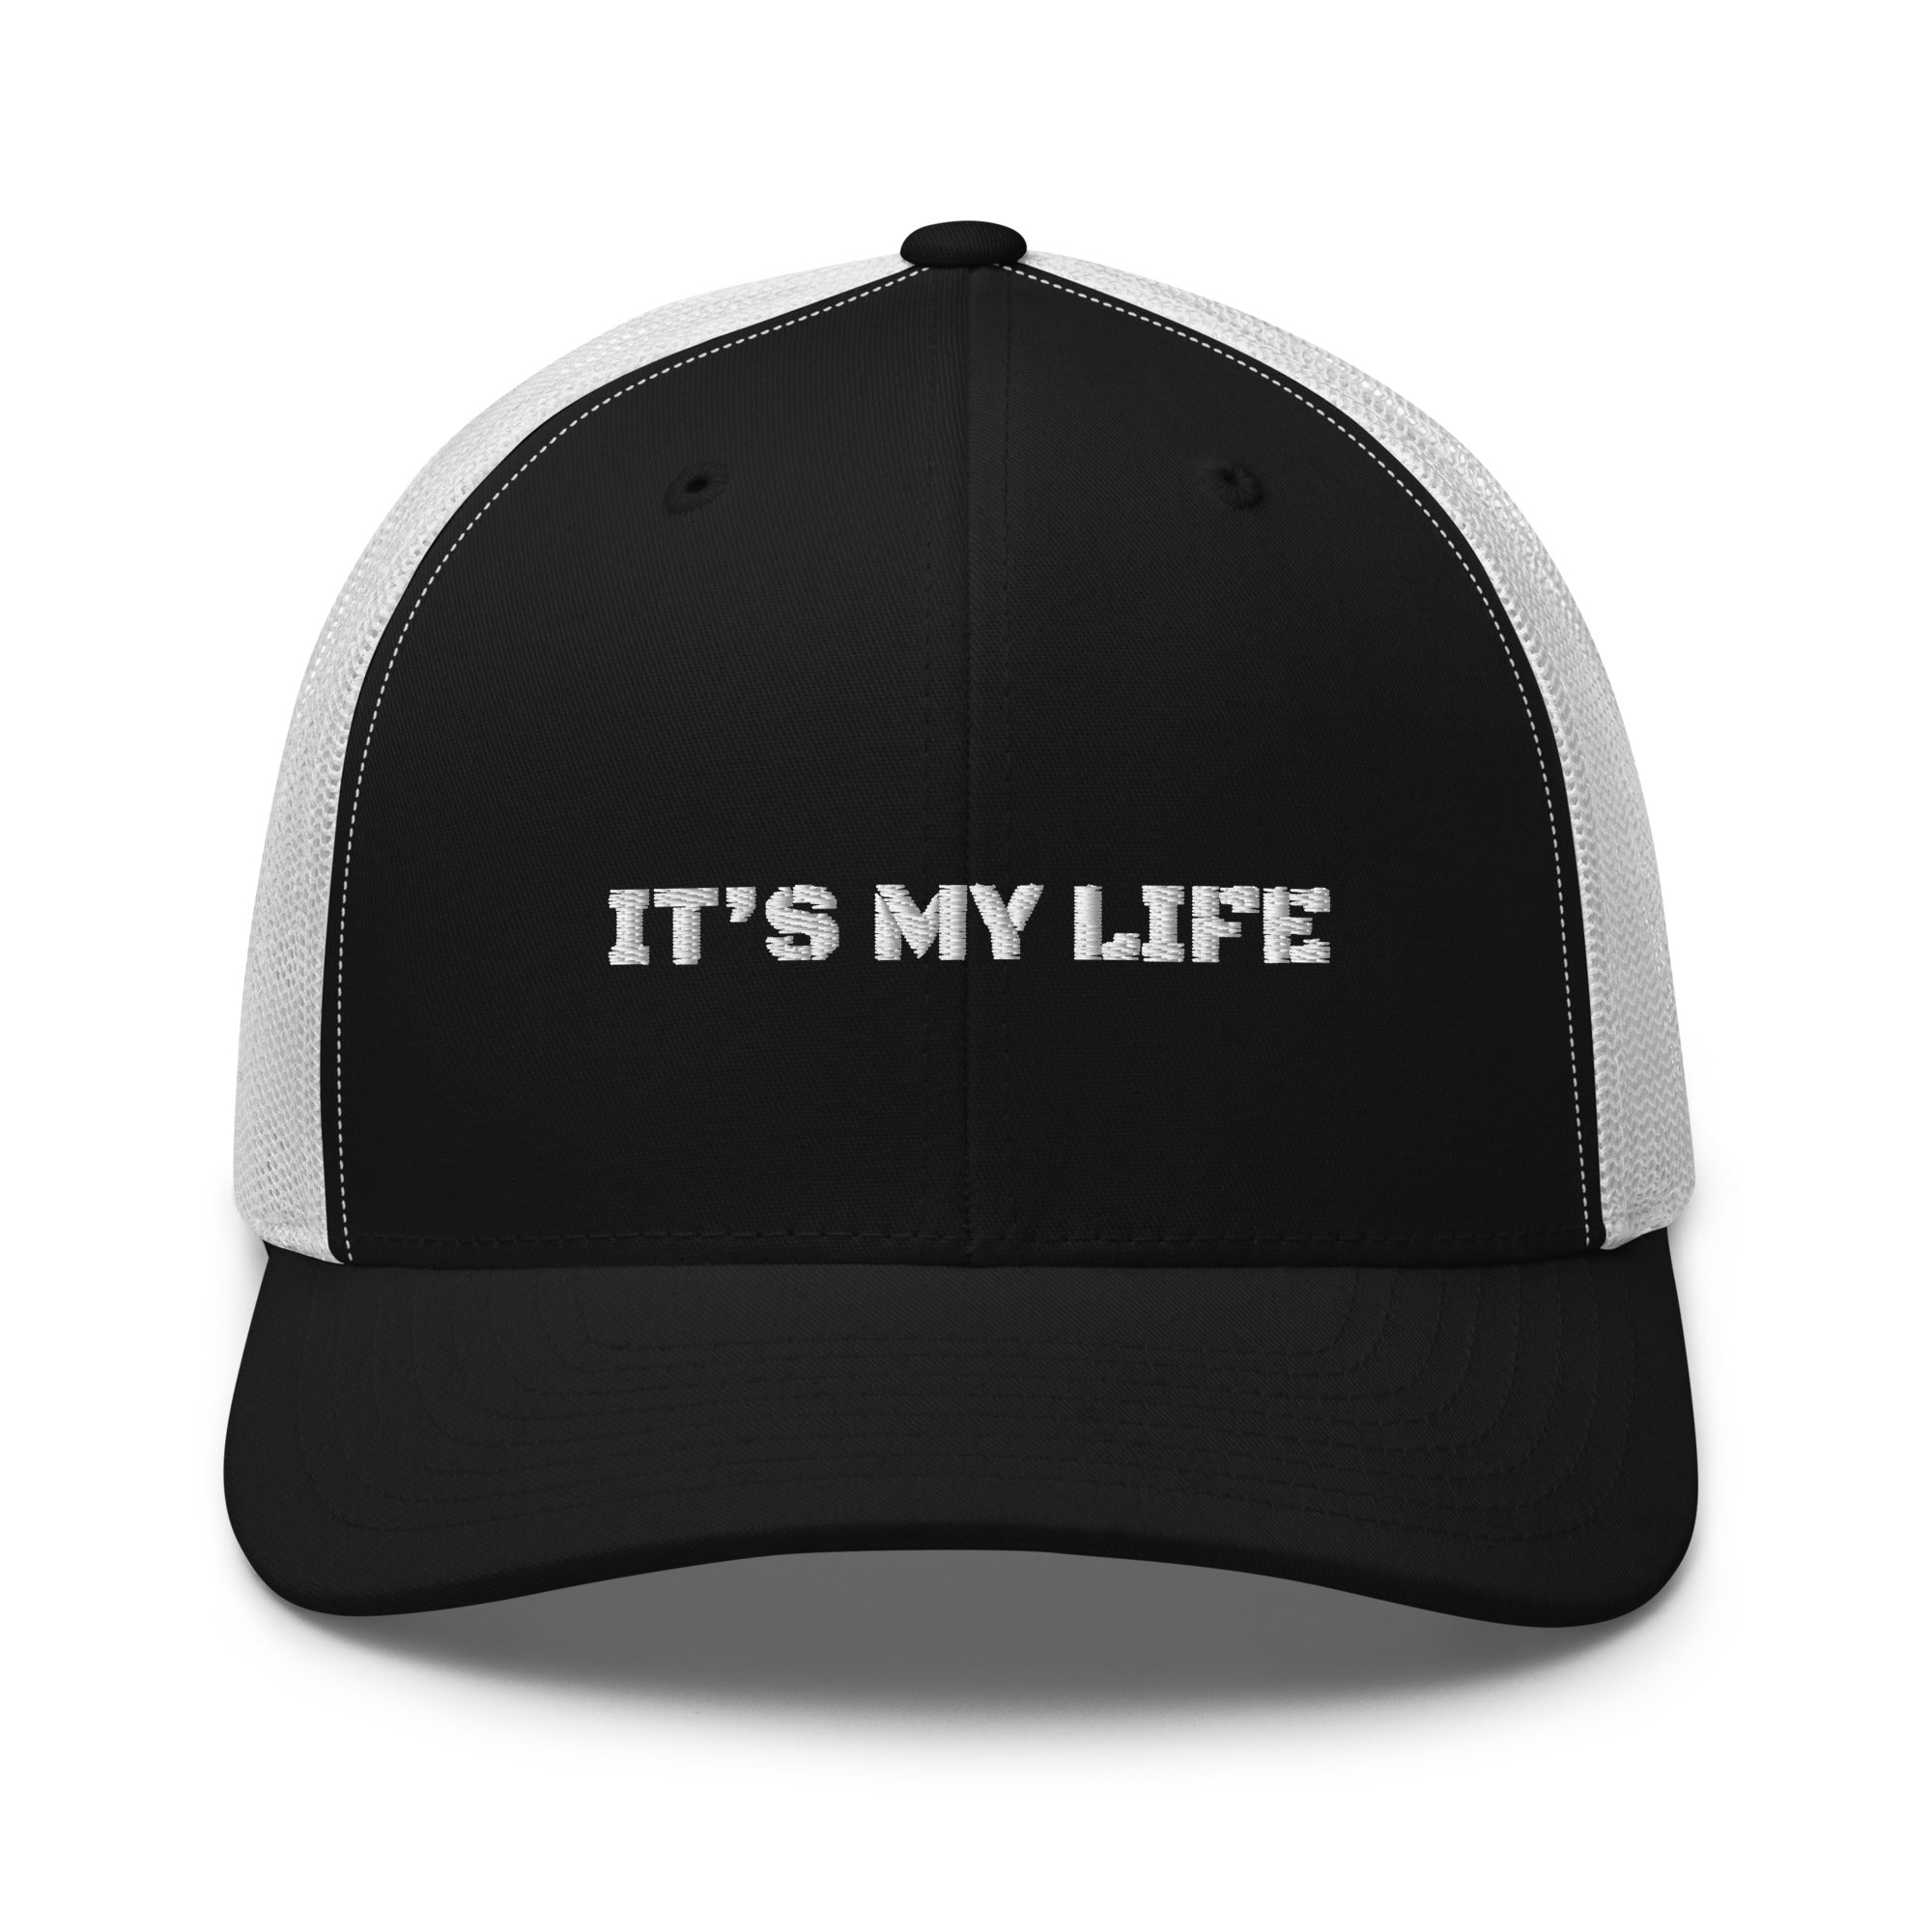 MB “It’s my life” geborduurde Trucker-pet